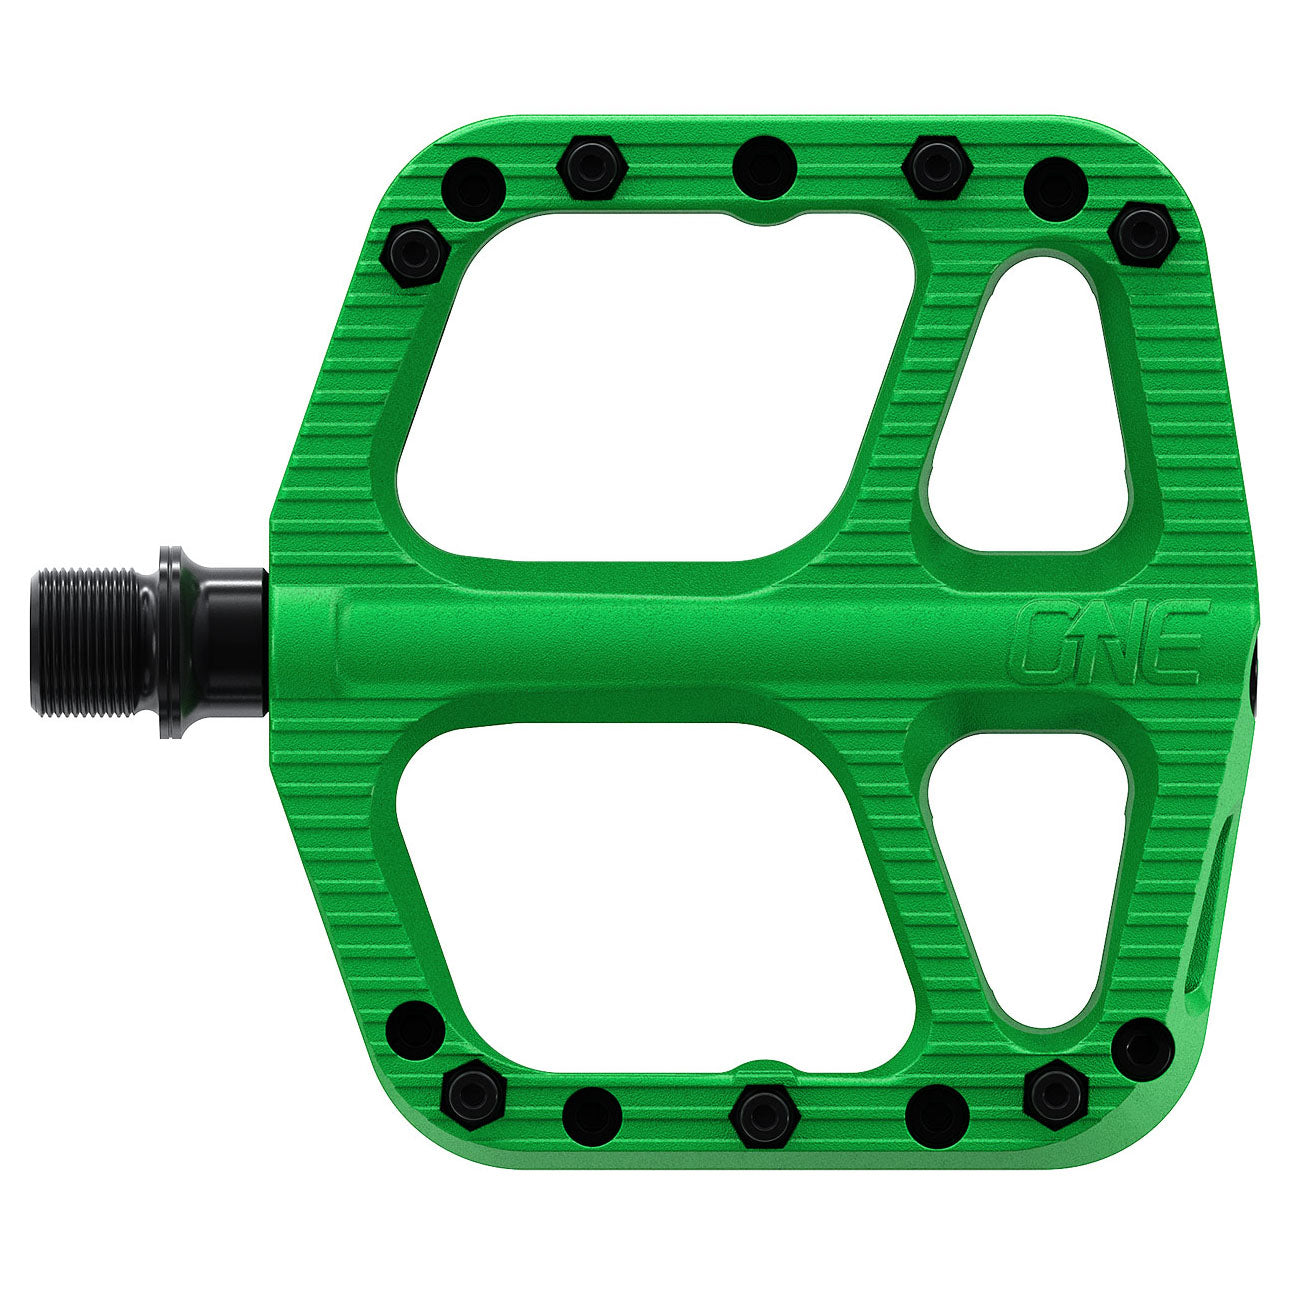 OneUp Components Small Comp Platform Pedals Green